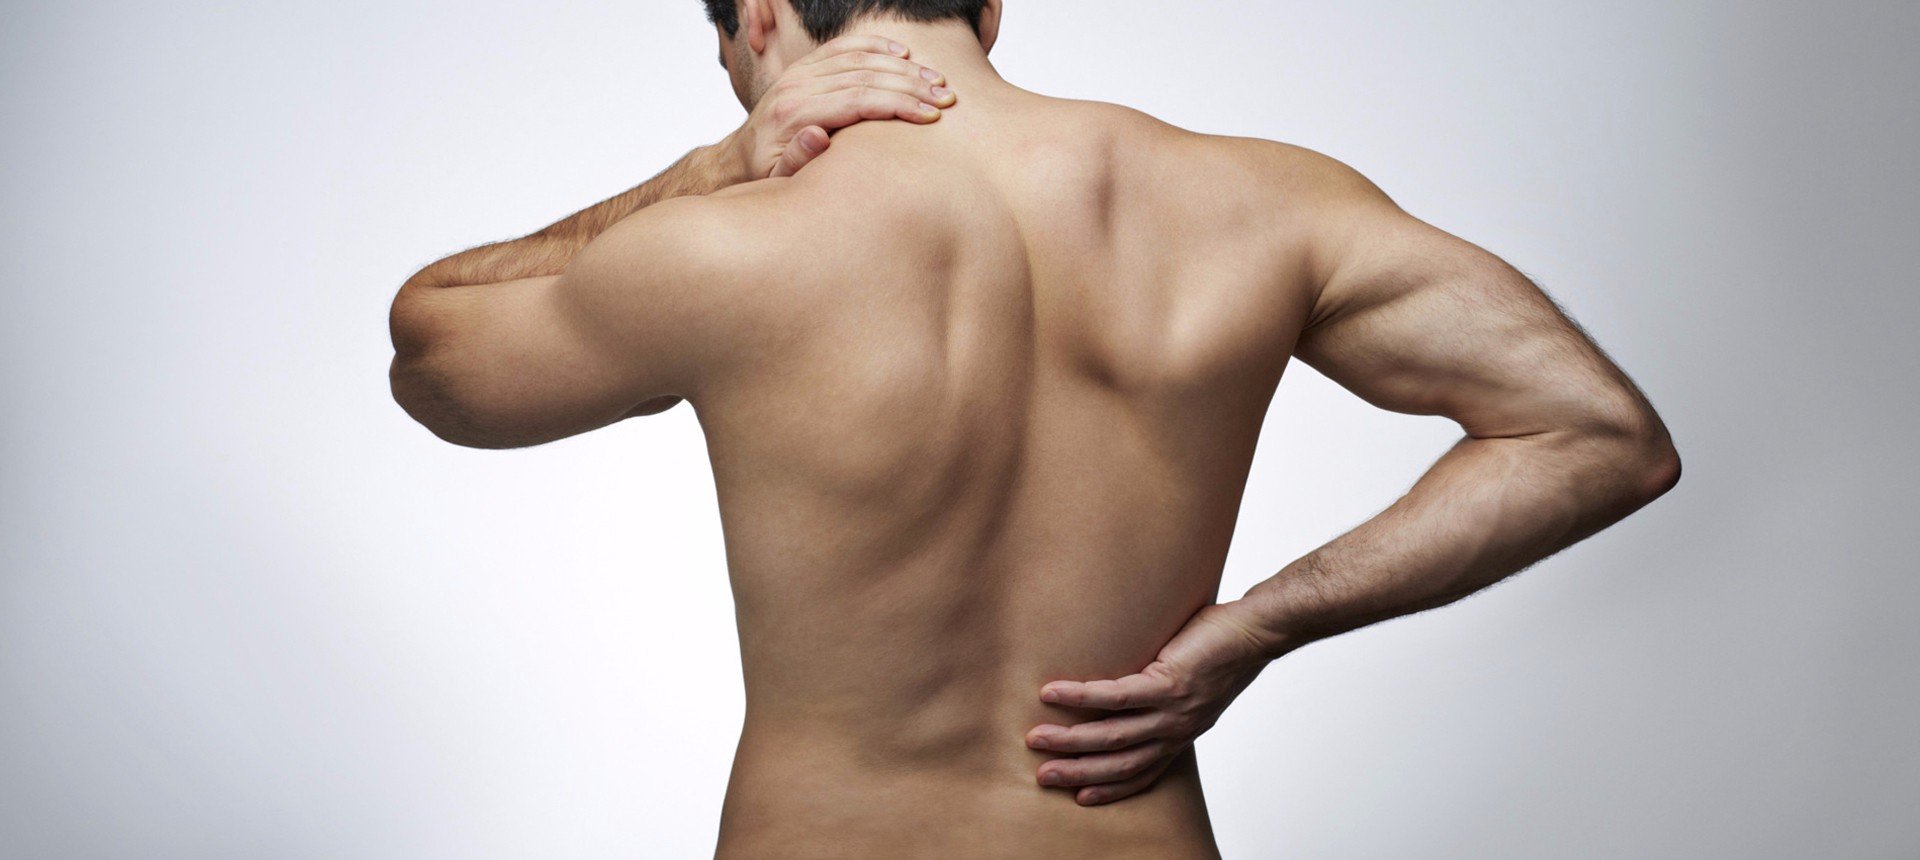 Причины заболеваний спины